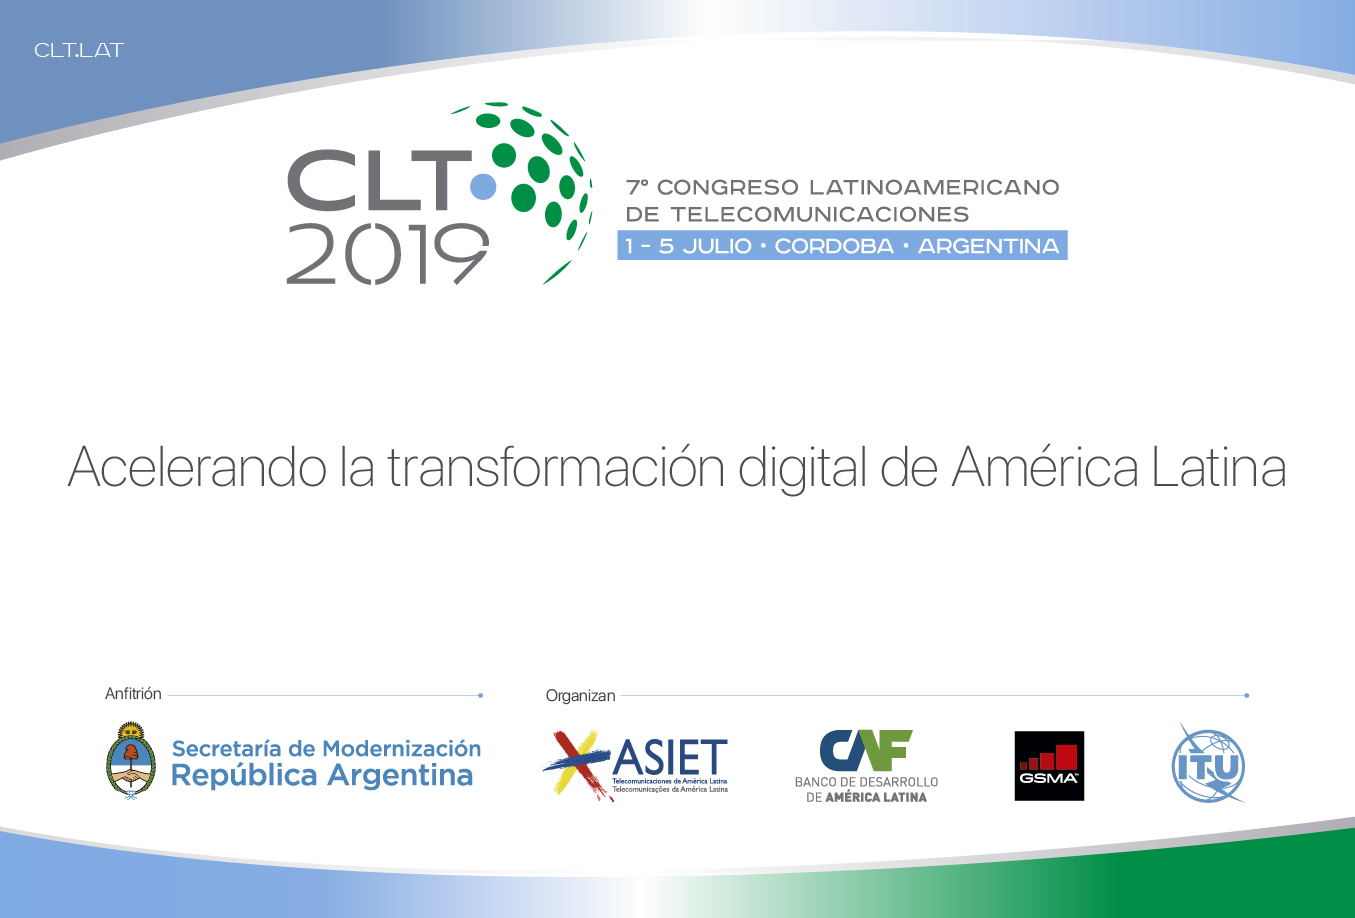 Eixos de debate no CLT19: 5G, economia digital, investimento em infraestrutura, utilização do espectro e inclusão